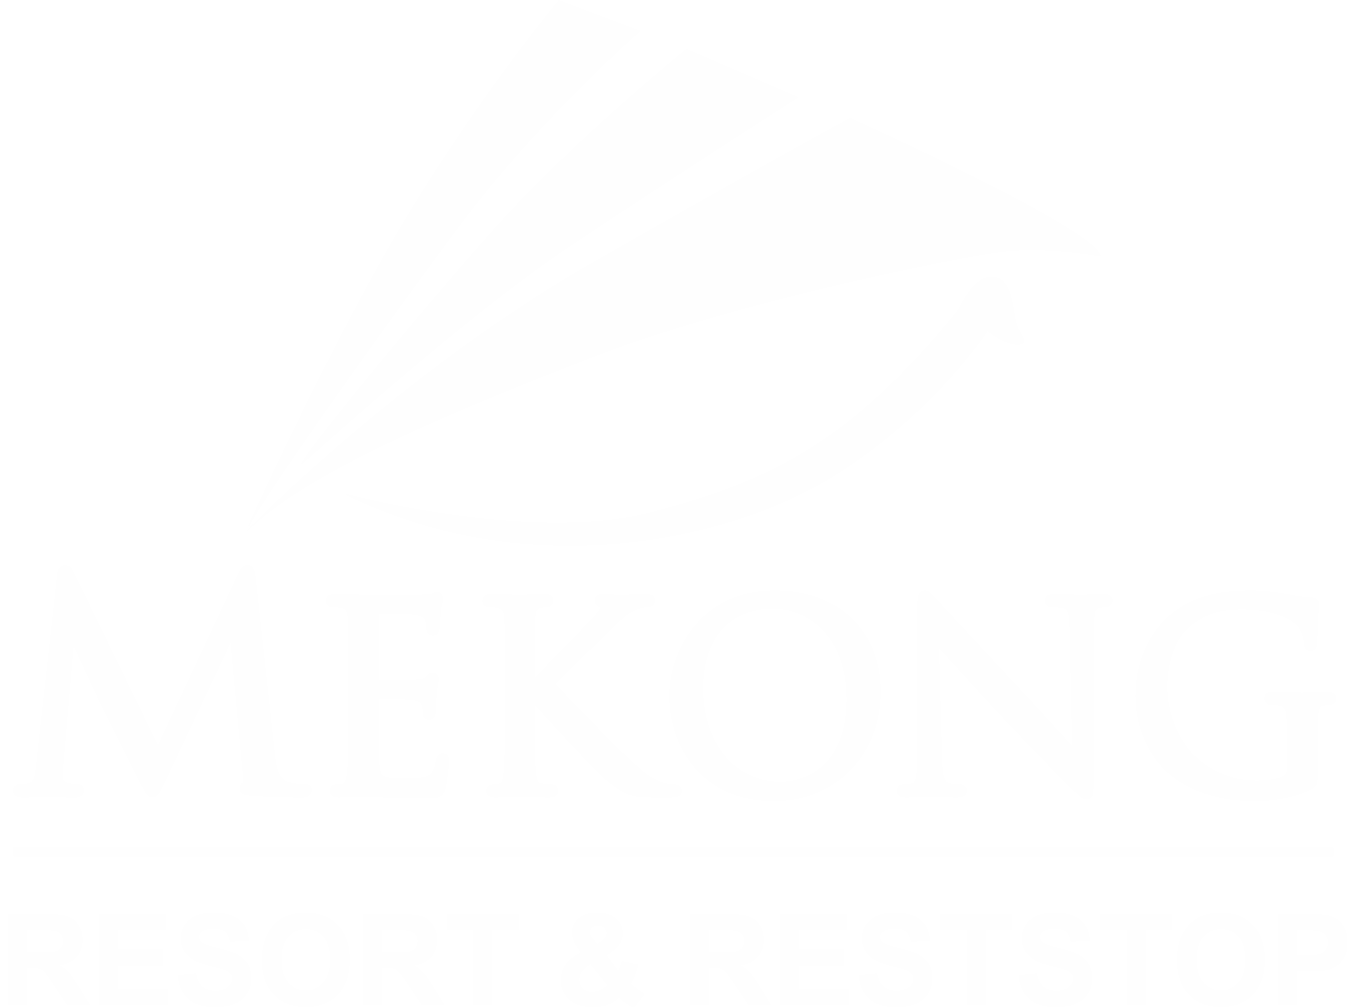 Mekong Long Thành